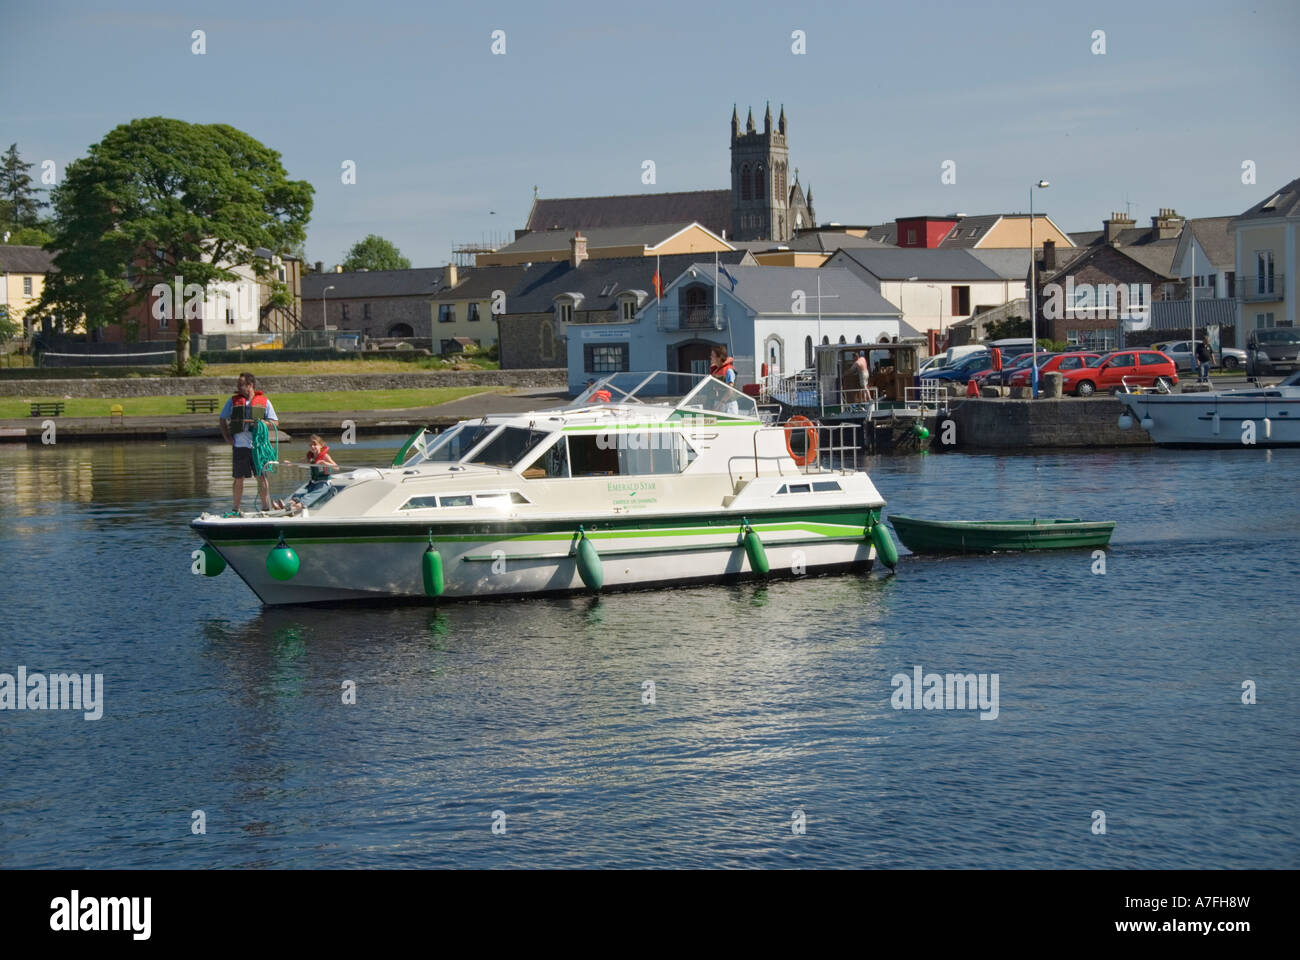 County Leitrim Irlande Carrick on Shannon location de bateau croisière Marina Banque D'Images